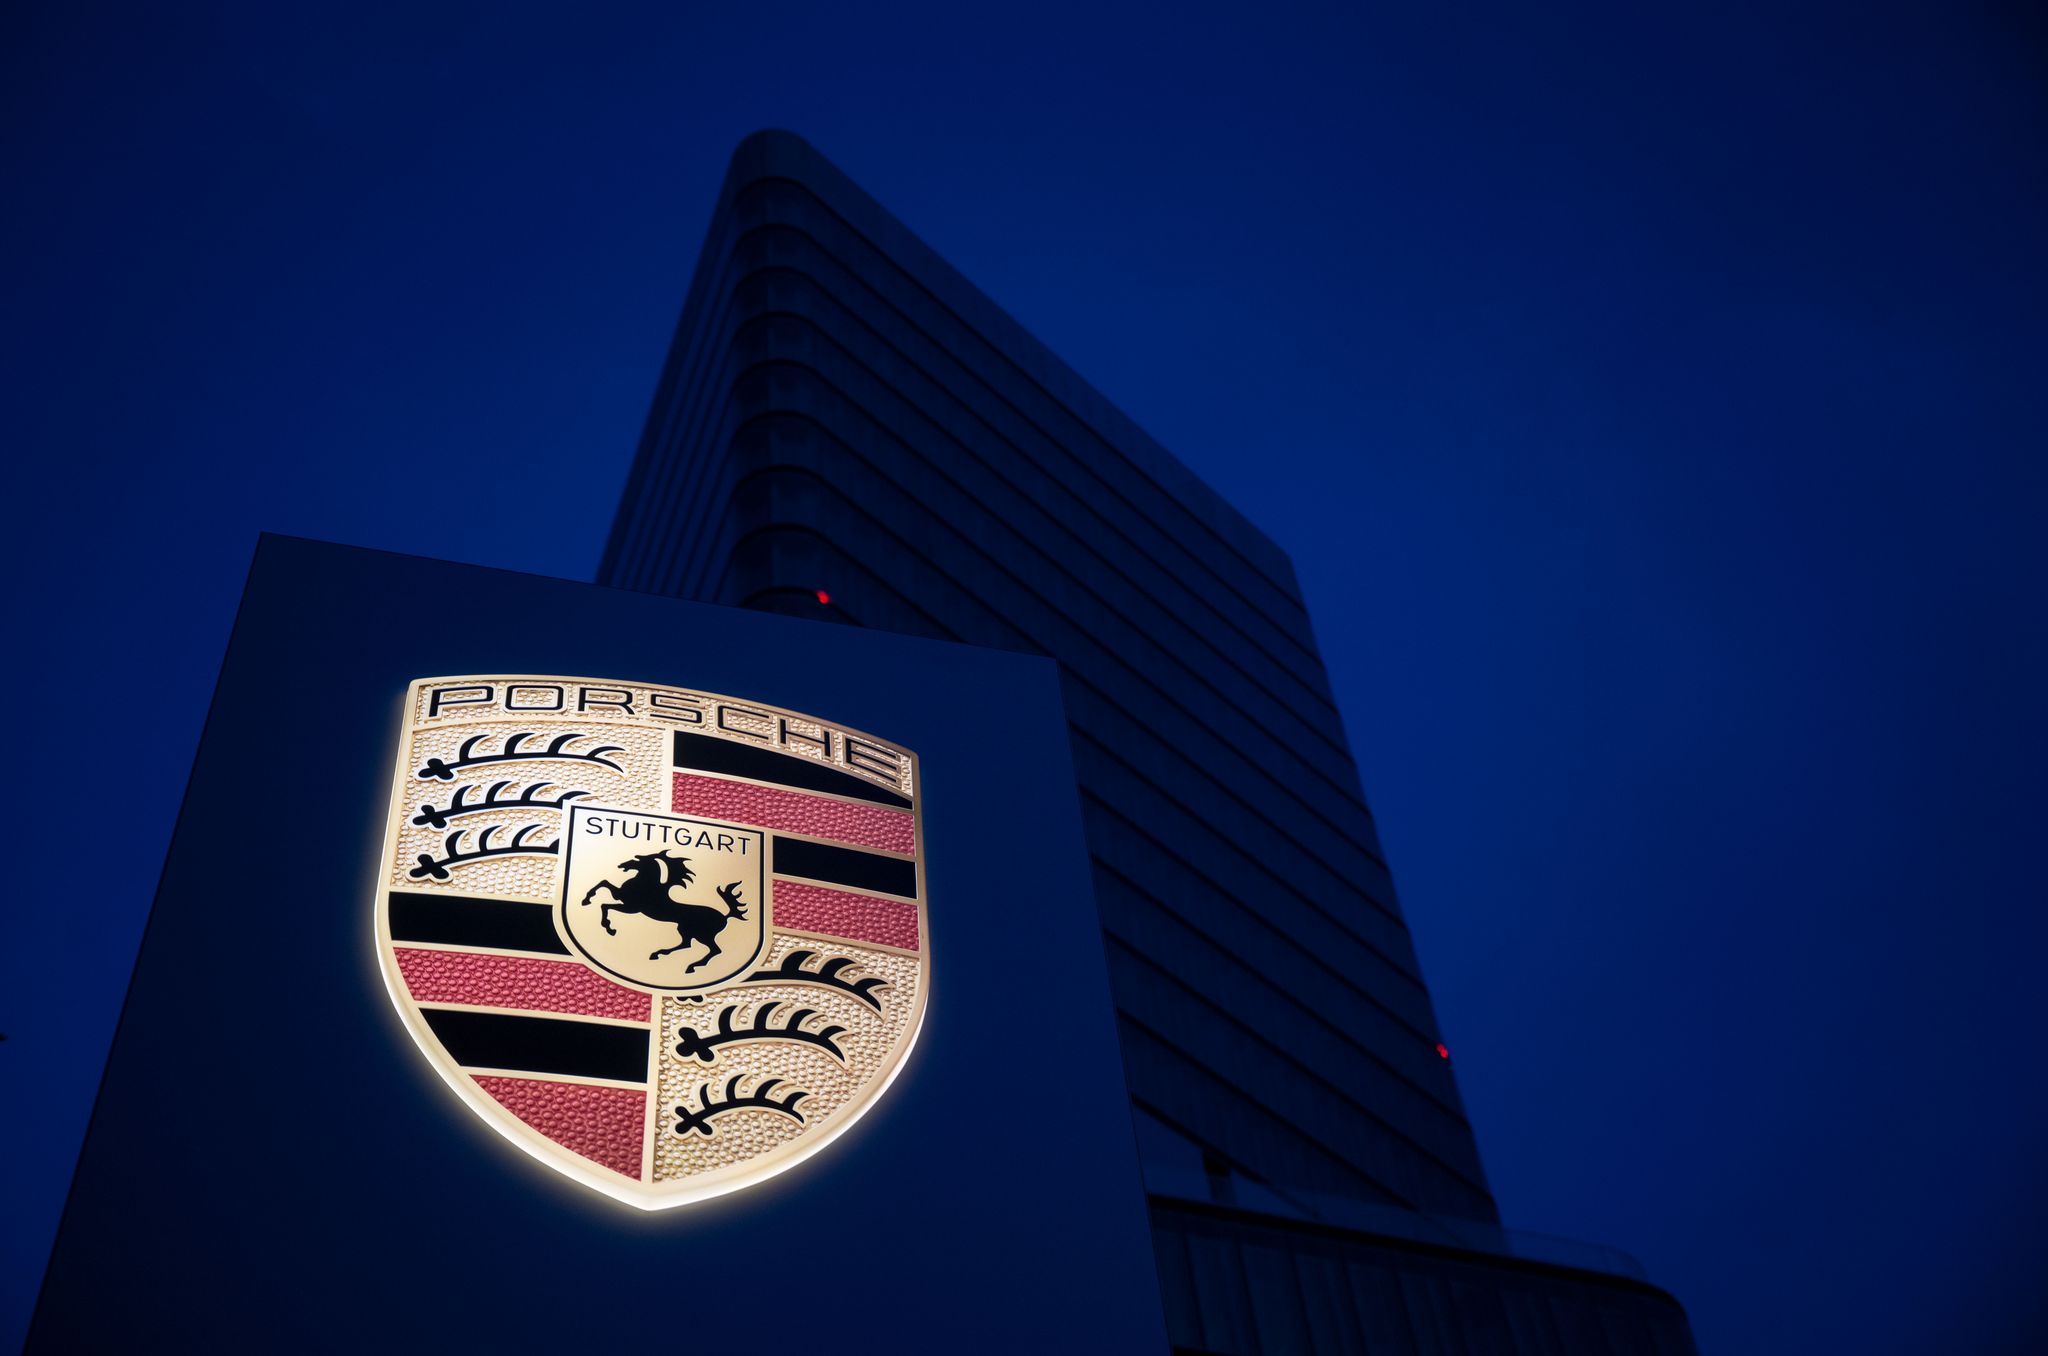 Das Logo des Autobauers Porsche auf einem Display des Porsche-Zentrums in Stuttgart.